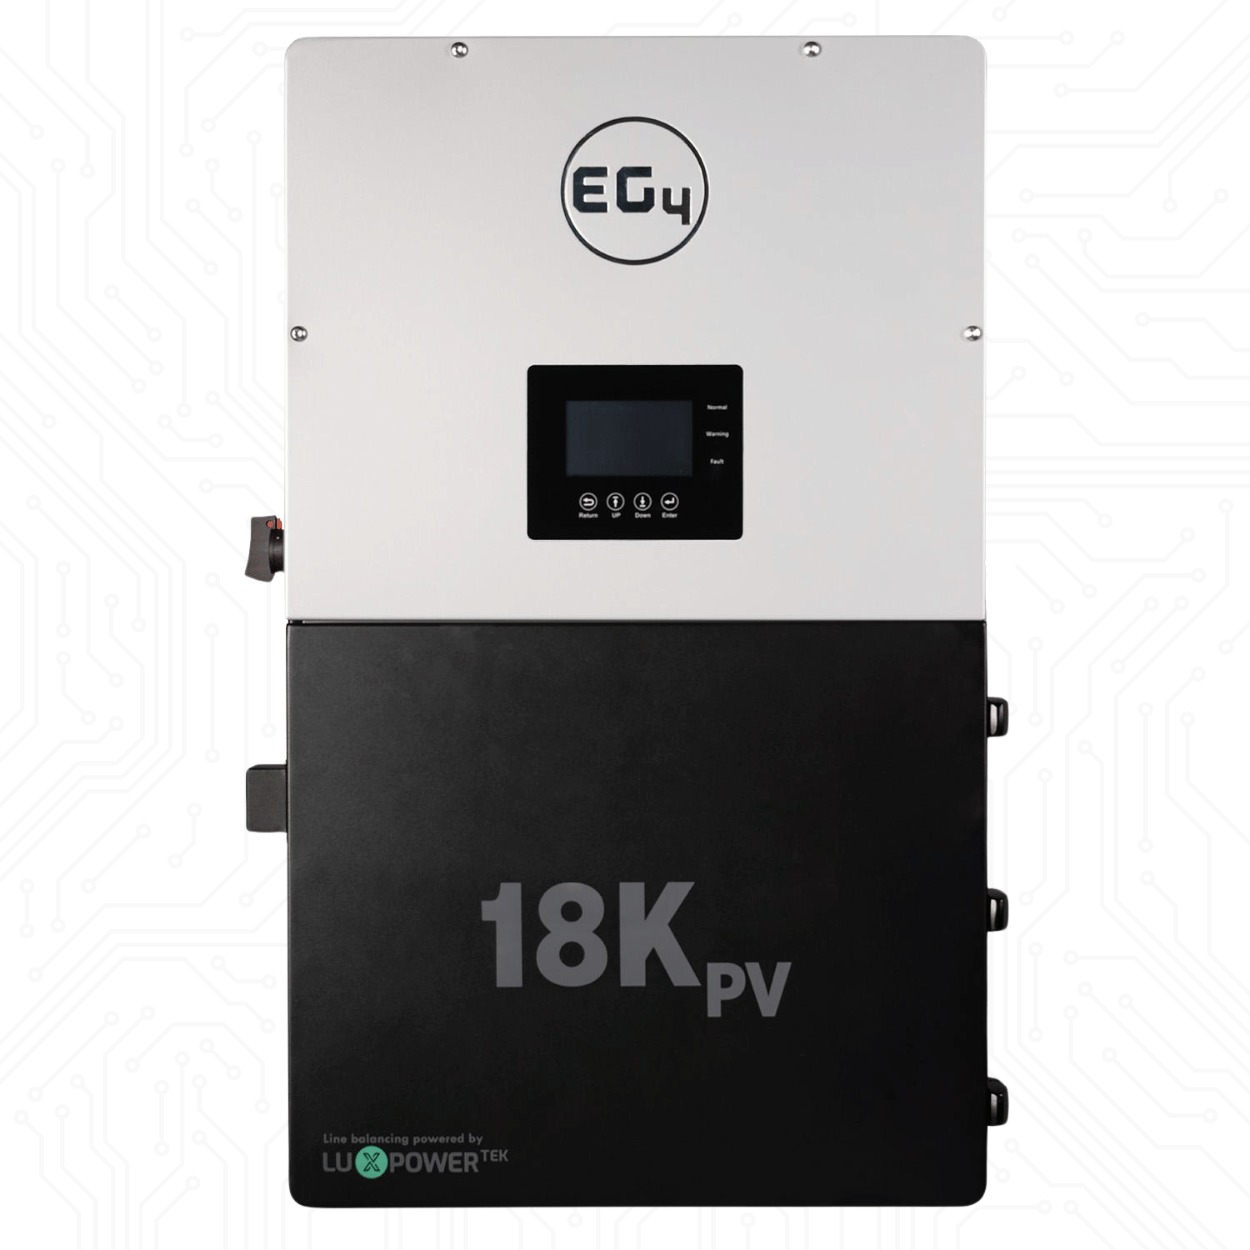 EG4 18kPV All-In-One Hybrid Inverter